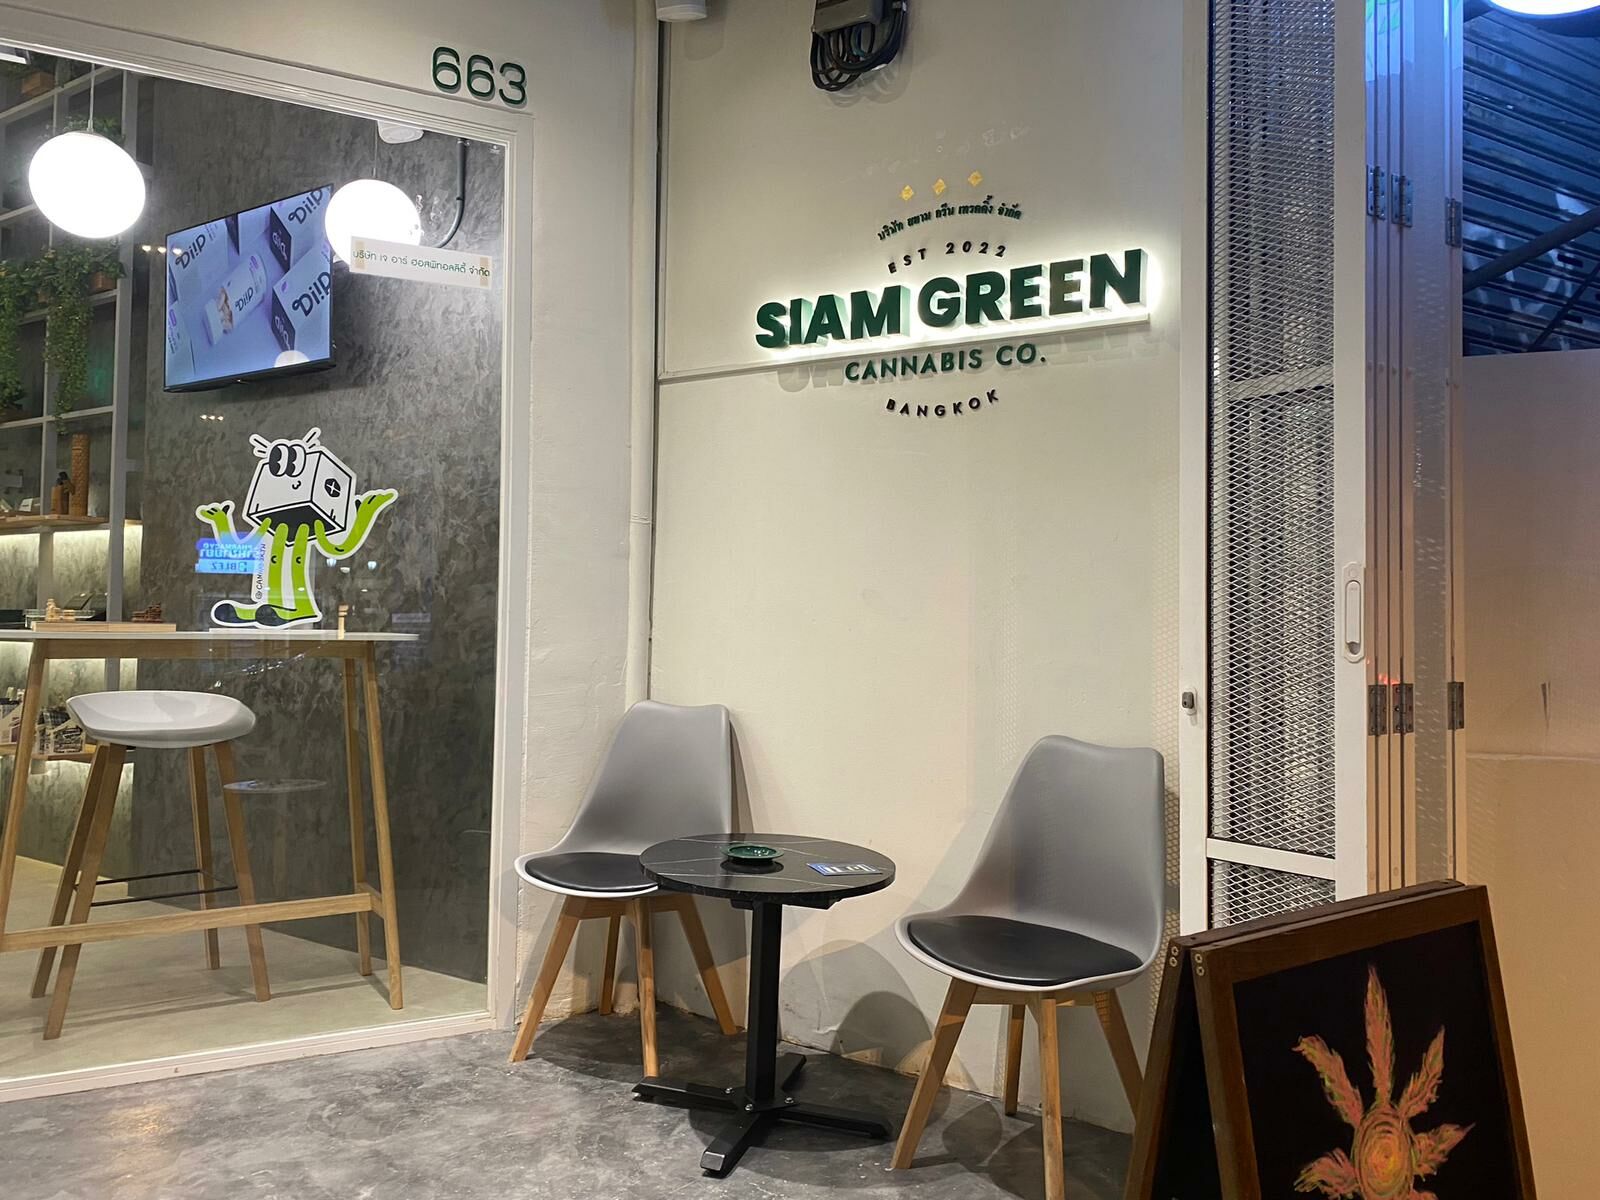 Đưa ra lựa chọn thông minh hơn với Siam Green Cannabis Co., nơi bạn nên đến để mua cần sa & CBD - Kết nối Chương trình Cần sa Y tế